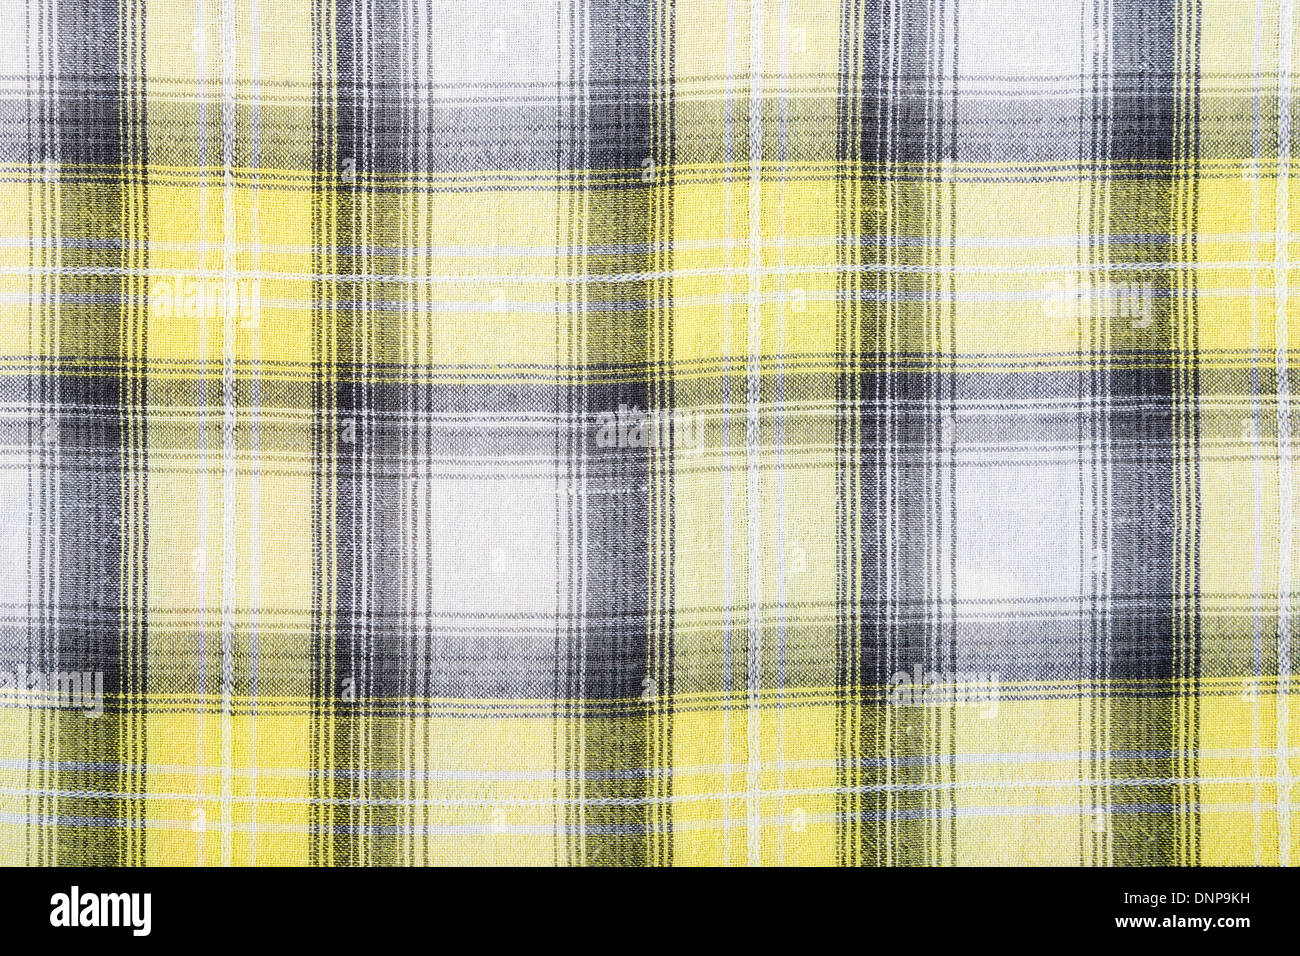 La matière dans un jaune et gris, une grille de fond textile. Banque D'Images